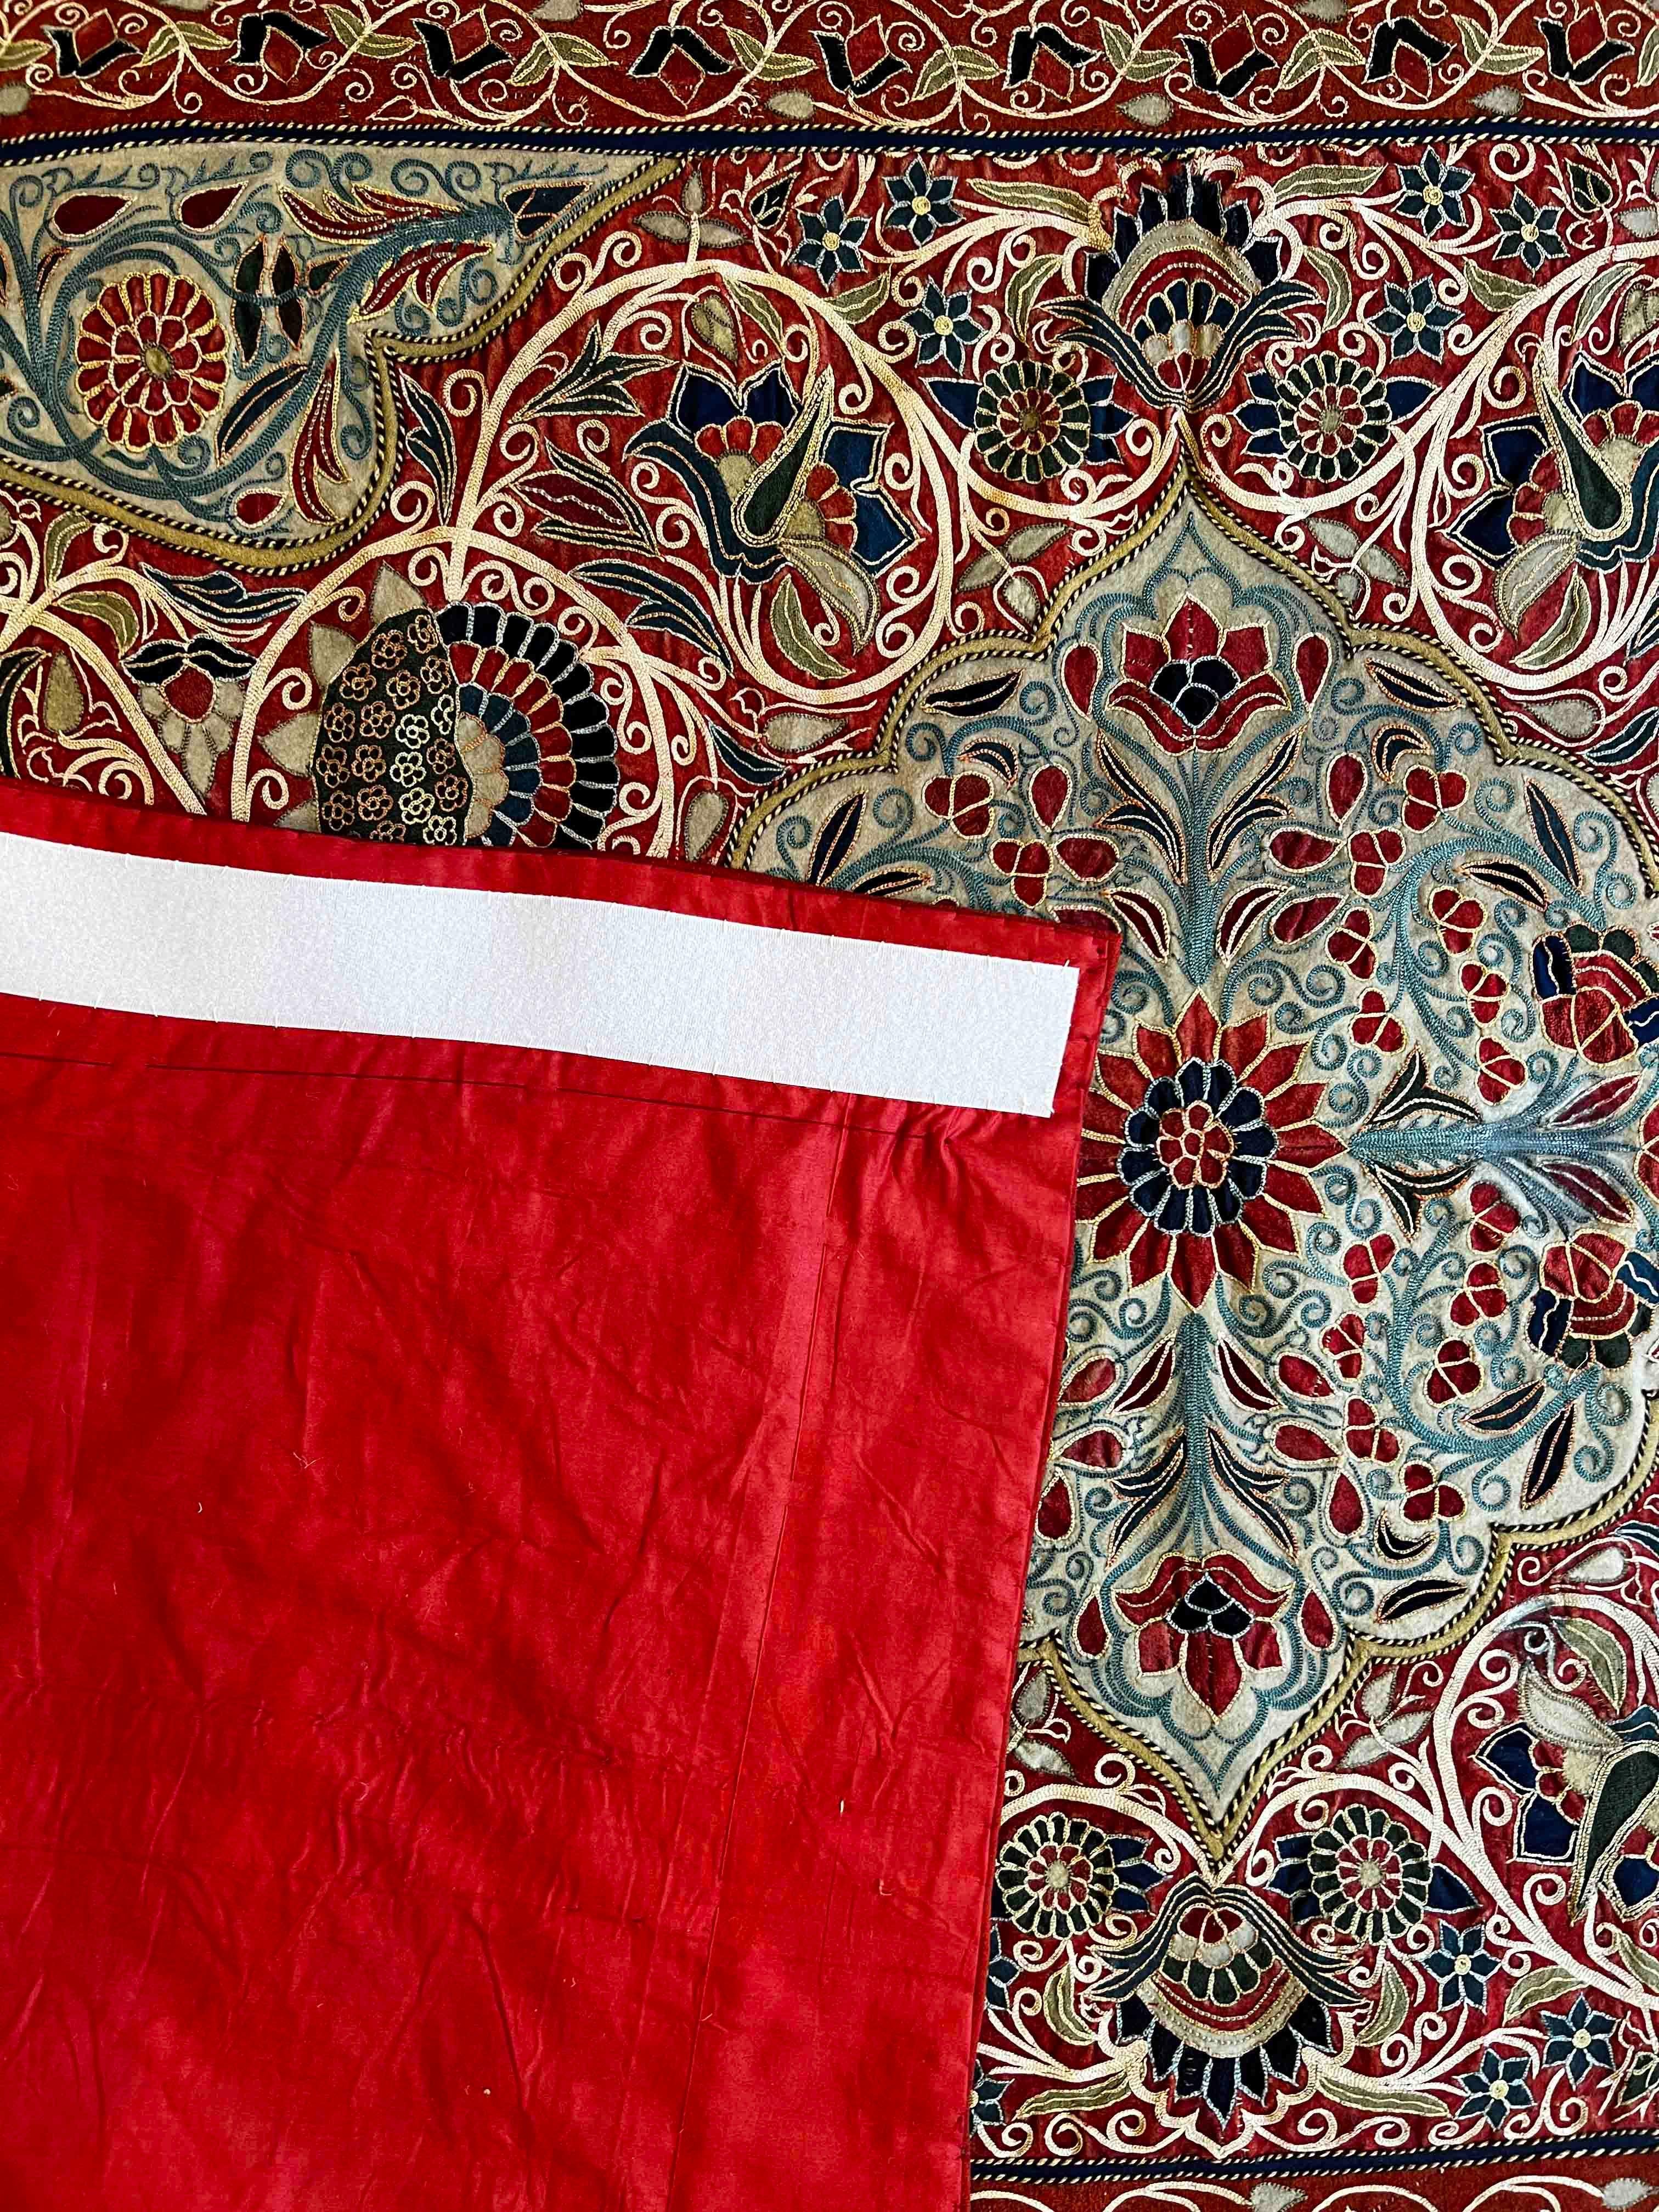 Tissu décoratif persan du 19ème siècle ( RESHT ) - Rashtidouzi
Exceptionnel tissu persan du 19ème siècle (RESHT) ou RASHTIDOUZI en farsi et en très bon état avec de très jolies couleurs.

Grâce à notre atelier de restauration-conservation et aussi à